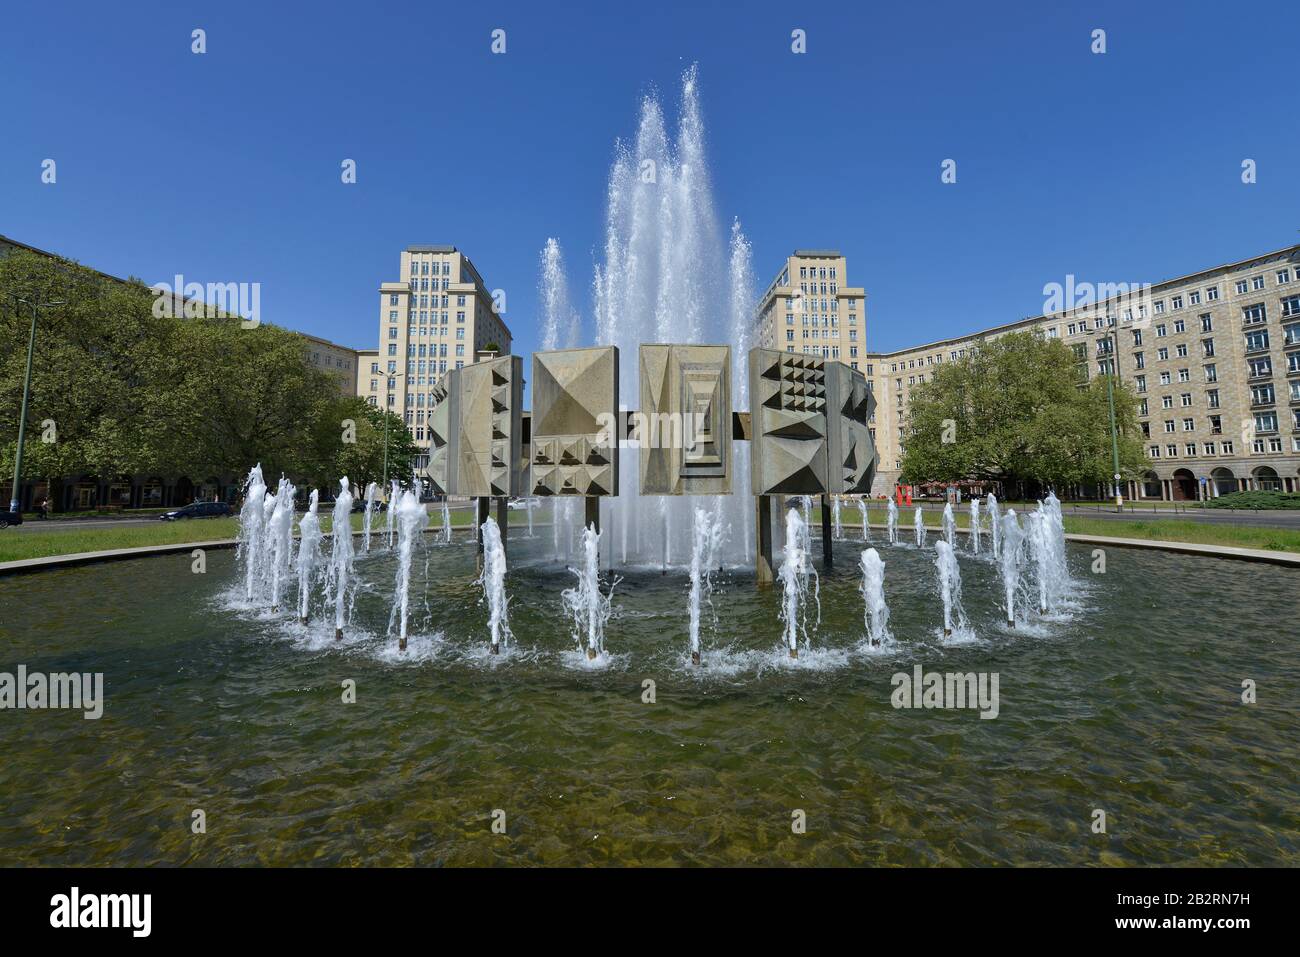 Brunnen, Strausberger Platz, Friedrichshain, Berlin, Deutschland Stock Photo